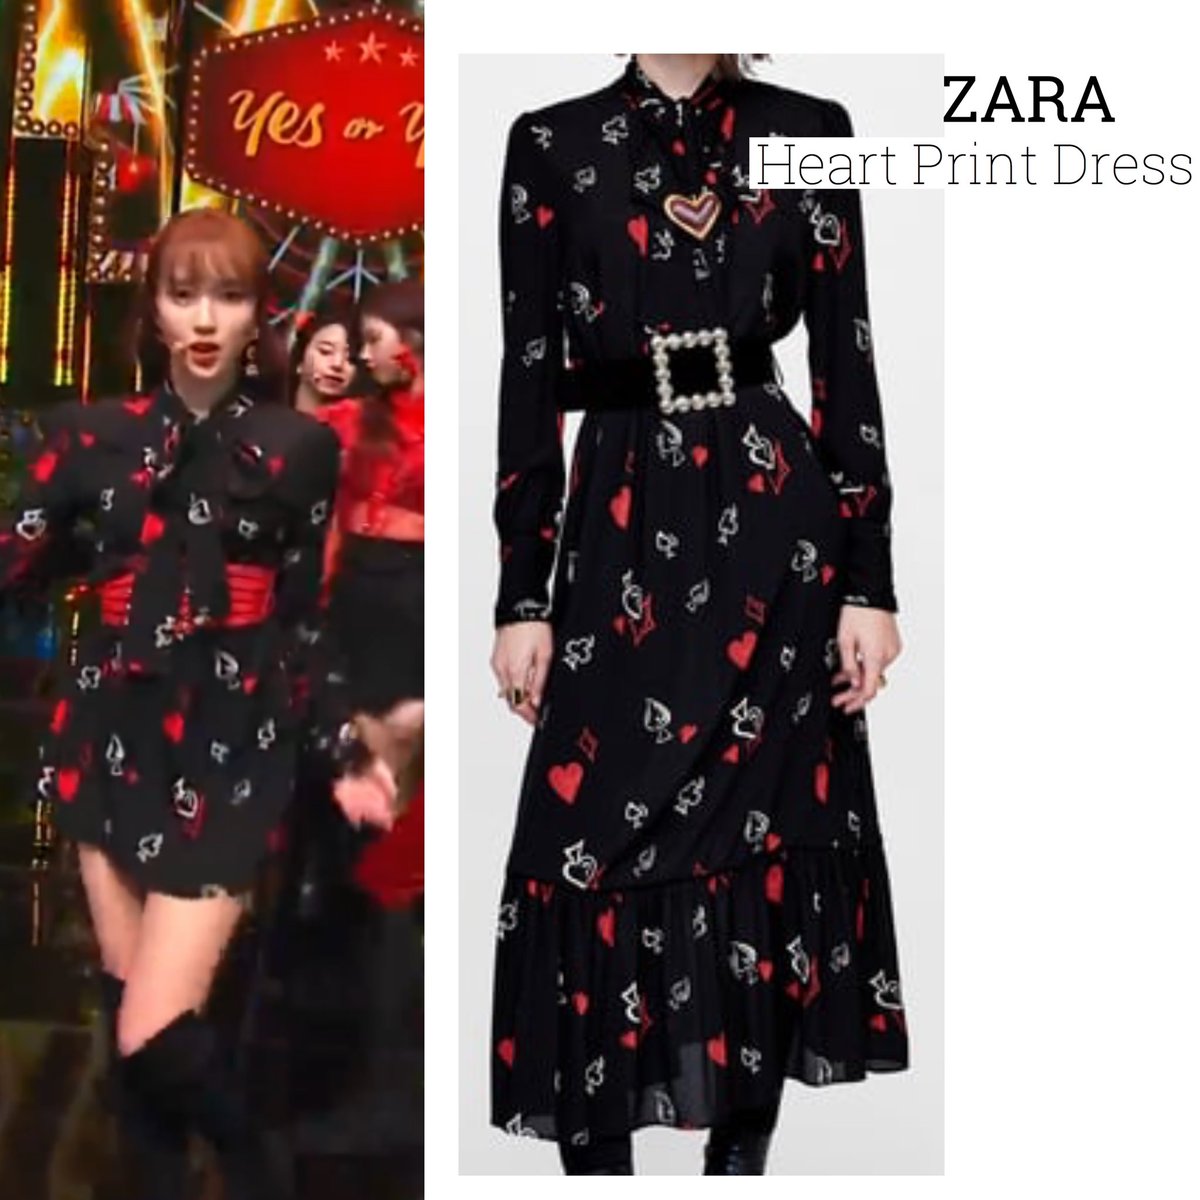 zara heart dress